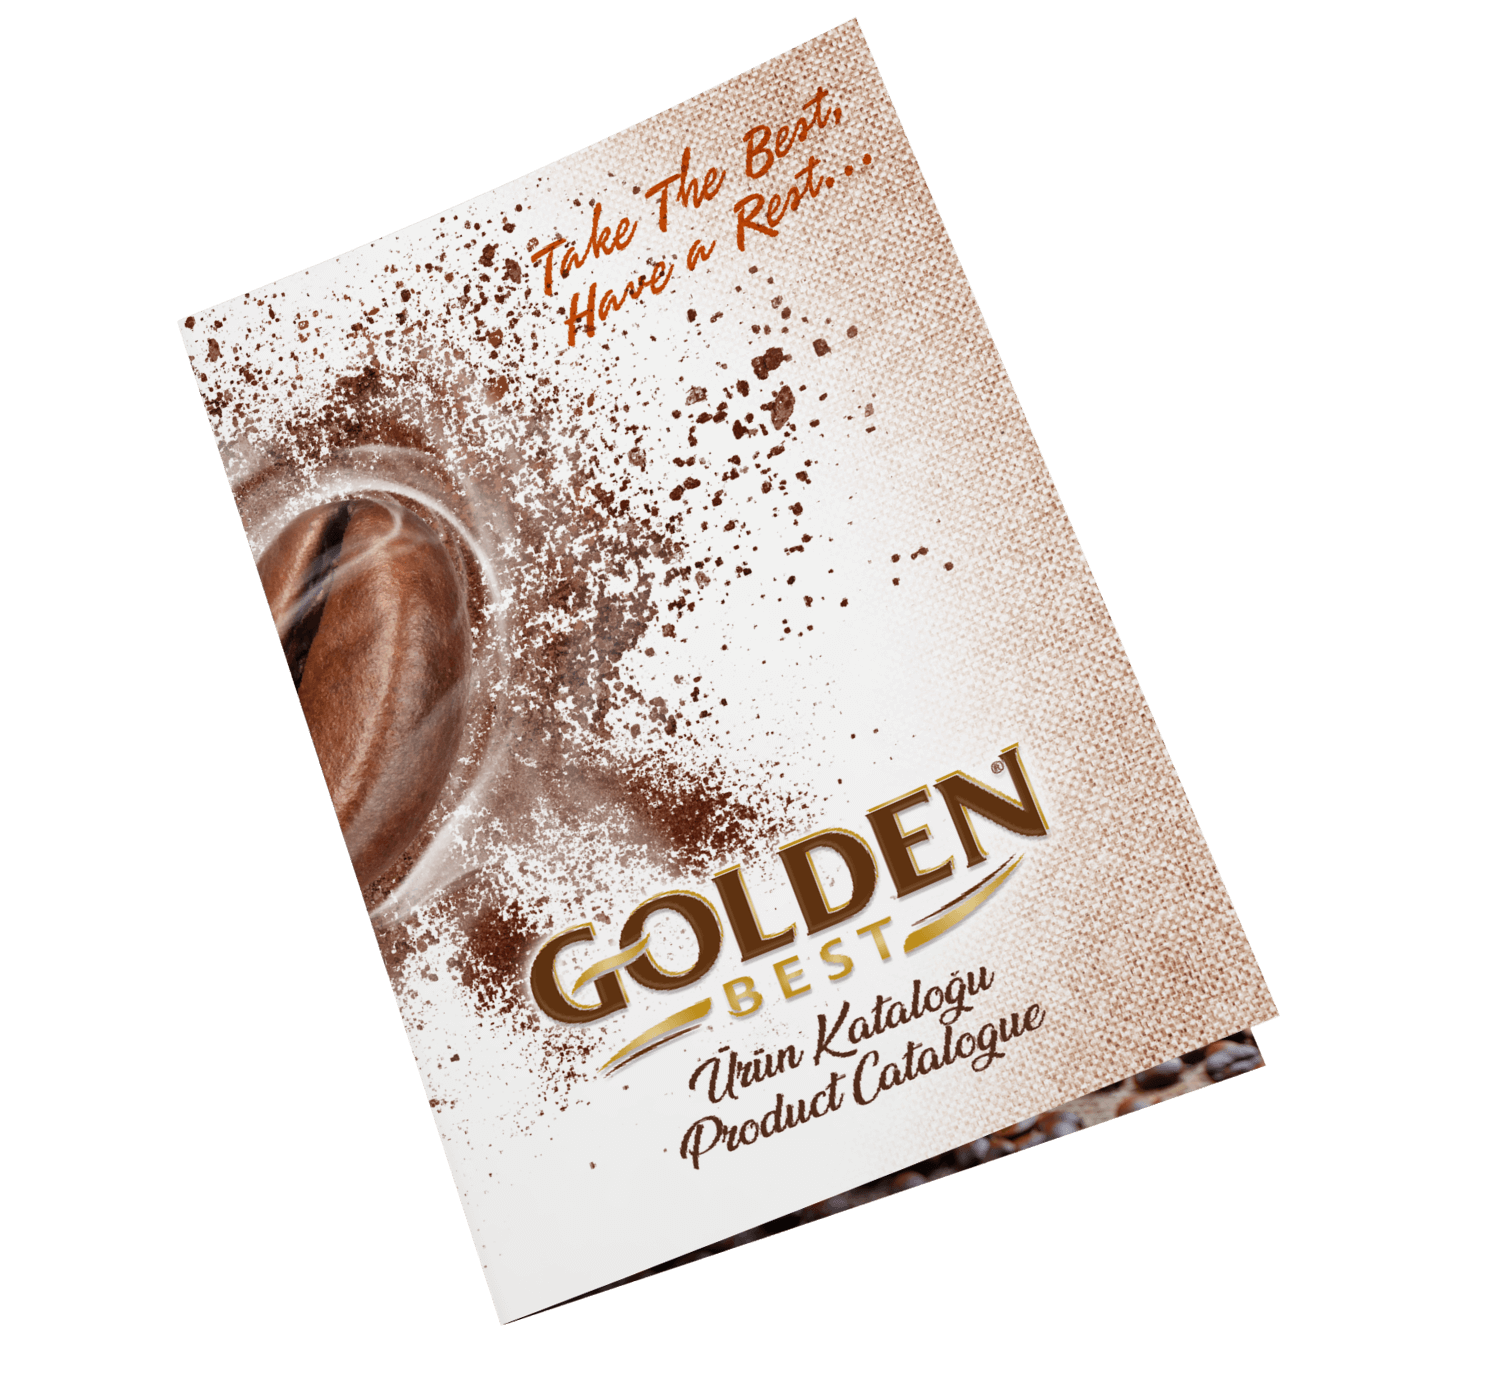 Golden Grup | golden best, golden kahve, instant coffe, 2in1, 3in1, 4in1, hazır türk kahvesi, mennegiç kahvesi, dibek kahvesi, vitaminto, royal juice, sevenday